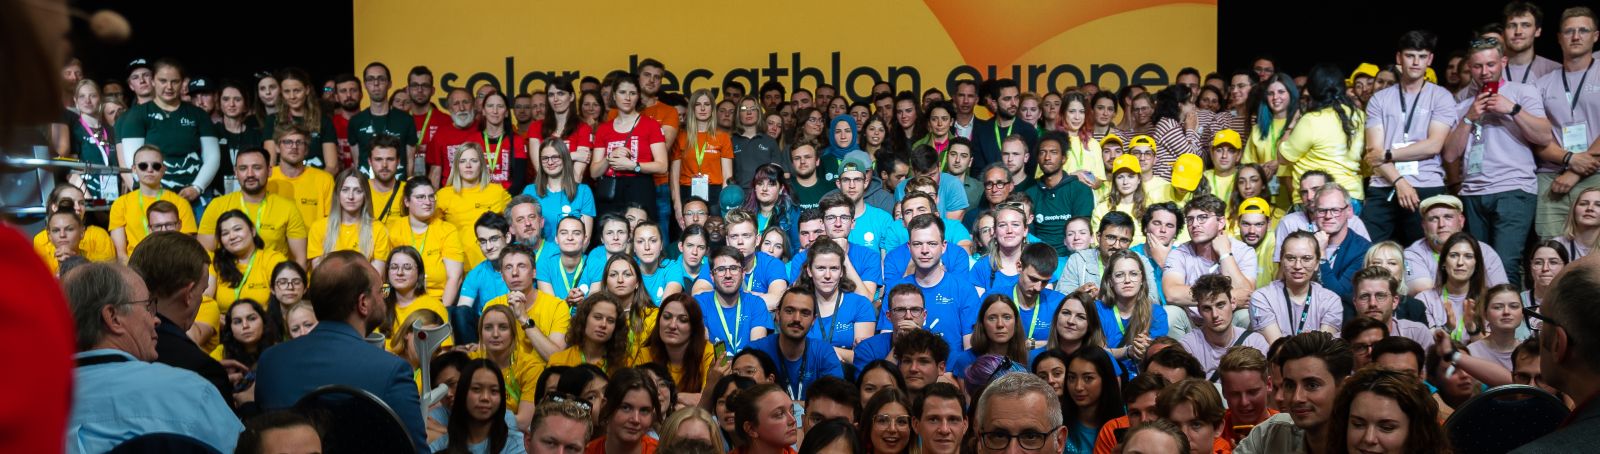 Mehrere hundert Studierende setzen ihre Ideen für eine klimafreundliche Zukunft beim Solar Decathlon Europe um.